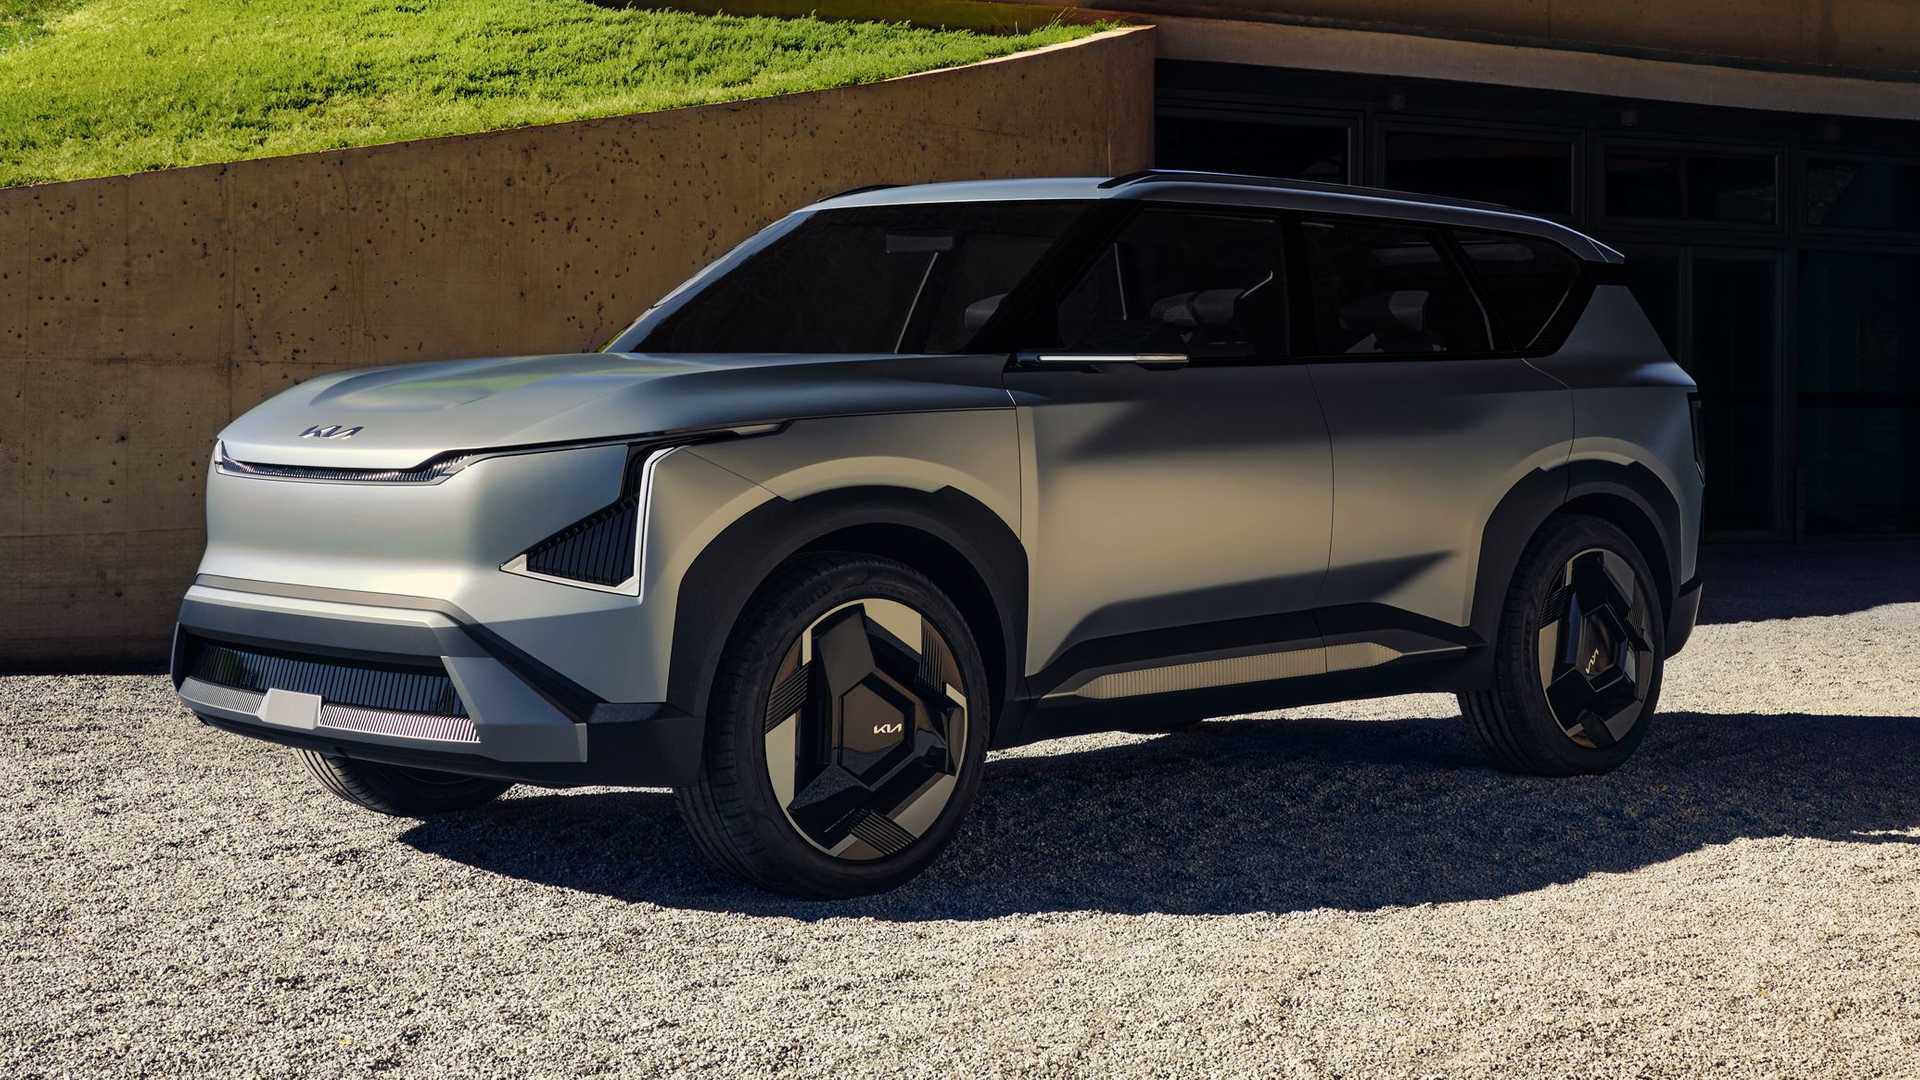 كيا EV5 الجديدة هي أحدث سيارة كهربائية للعلامة بتصميم عضلي وداخلية عصرية